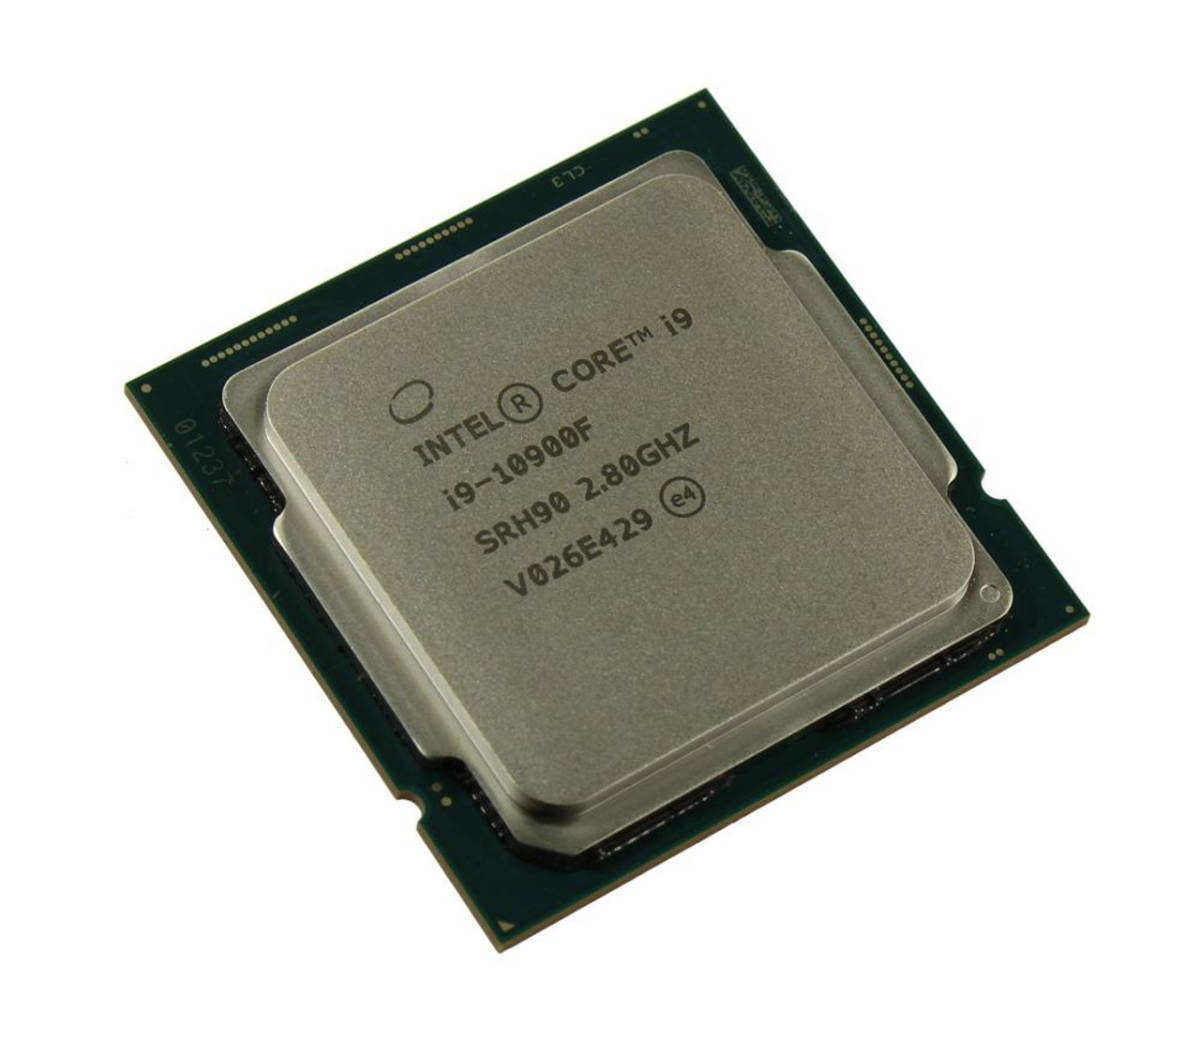 その他 Intel Core i9-10900F SRH90 10C 2.8GHz 20MB 65W LGA1200